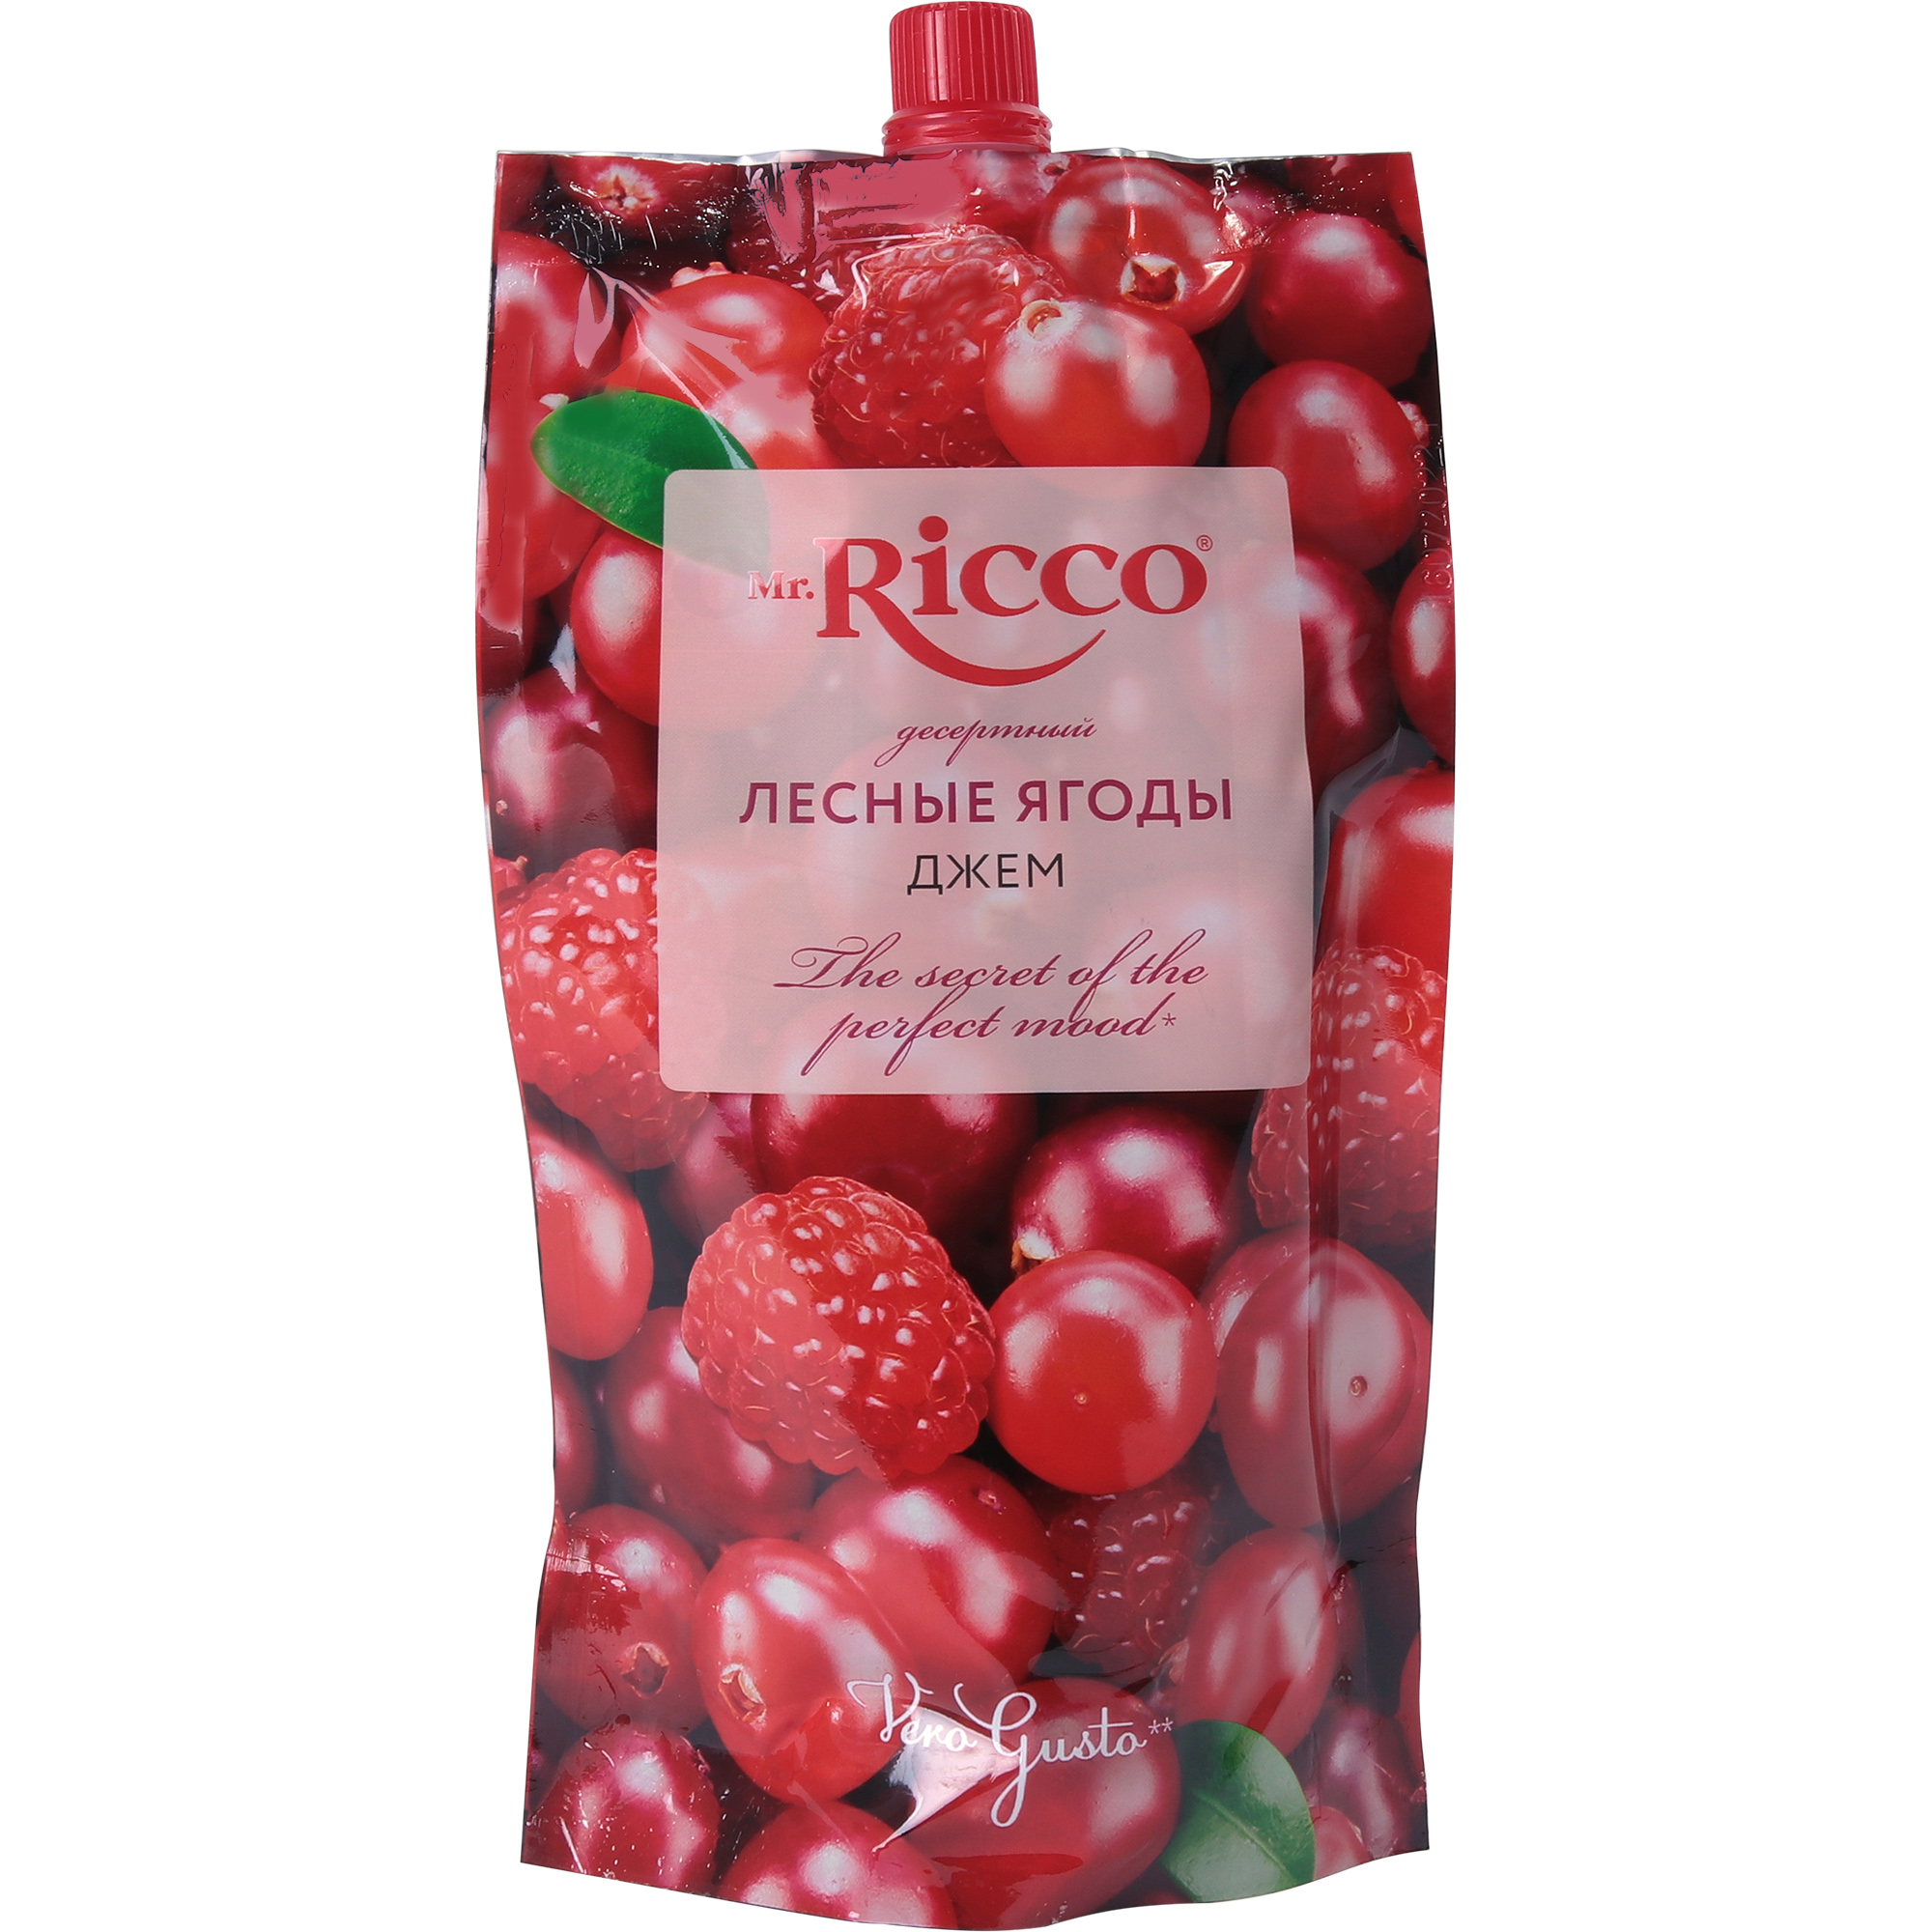 Джем Mr.Ricco лесные ягоды, 300 г кисломолочный продукт actimel клюква 1 5% бзмж 95 гр